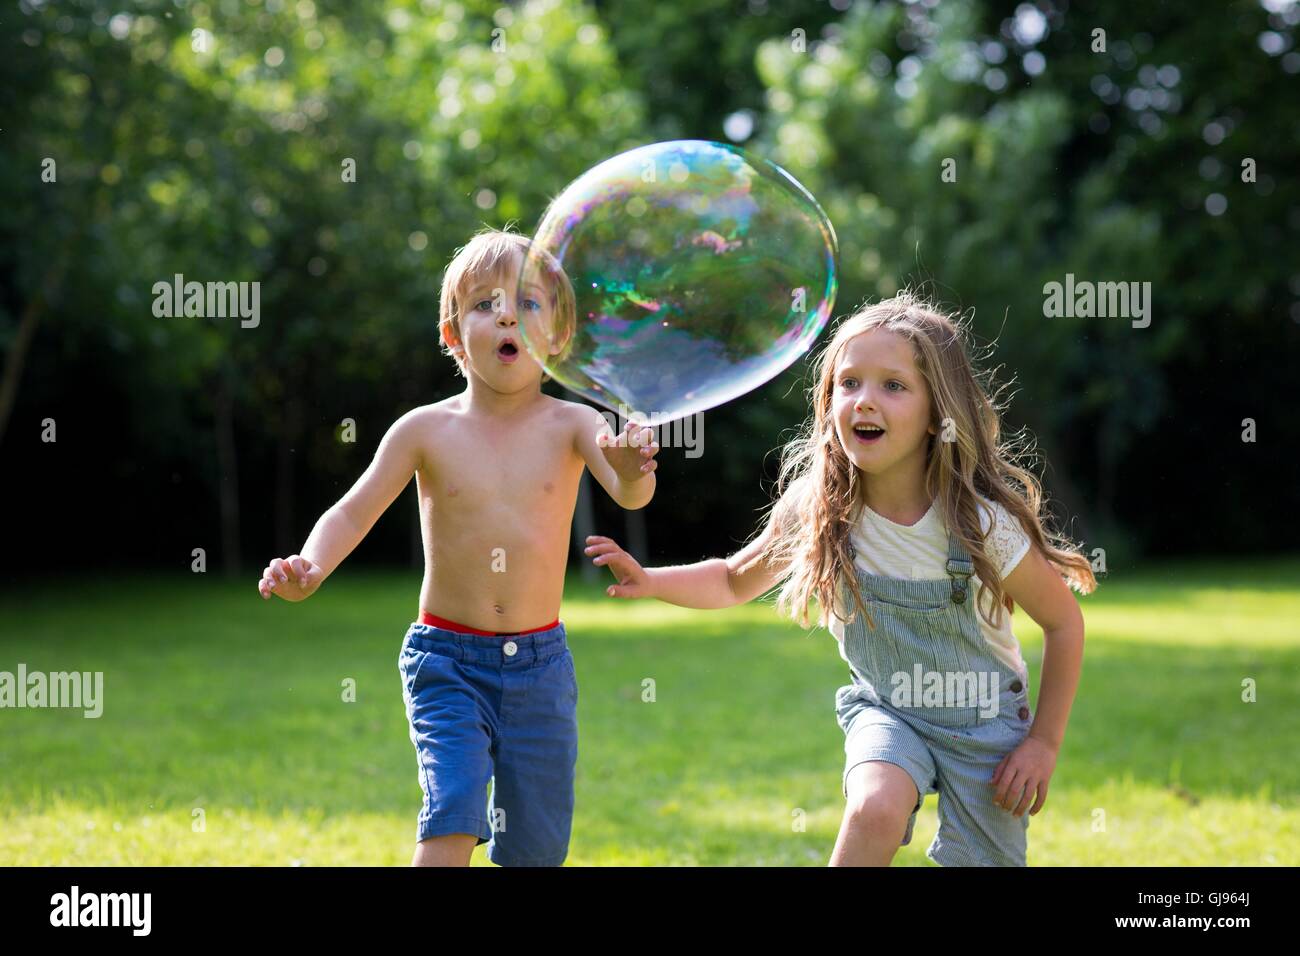 Liberados de la propiedad. Modelo liberado. Hermano y hermana persiguiendo burbujas en el jardín. Foto de stock